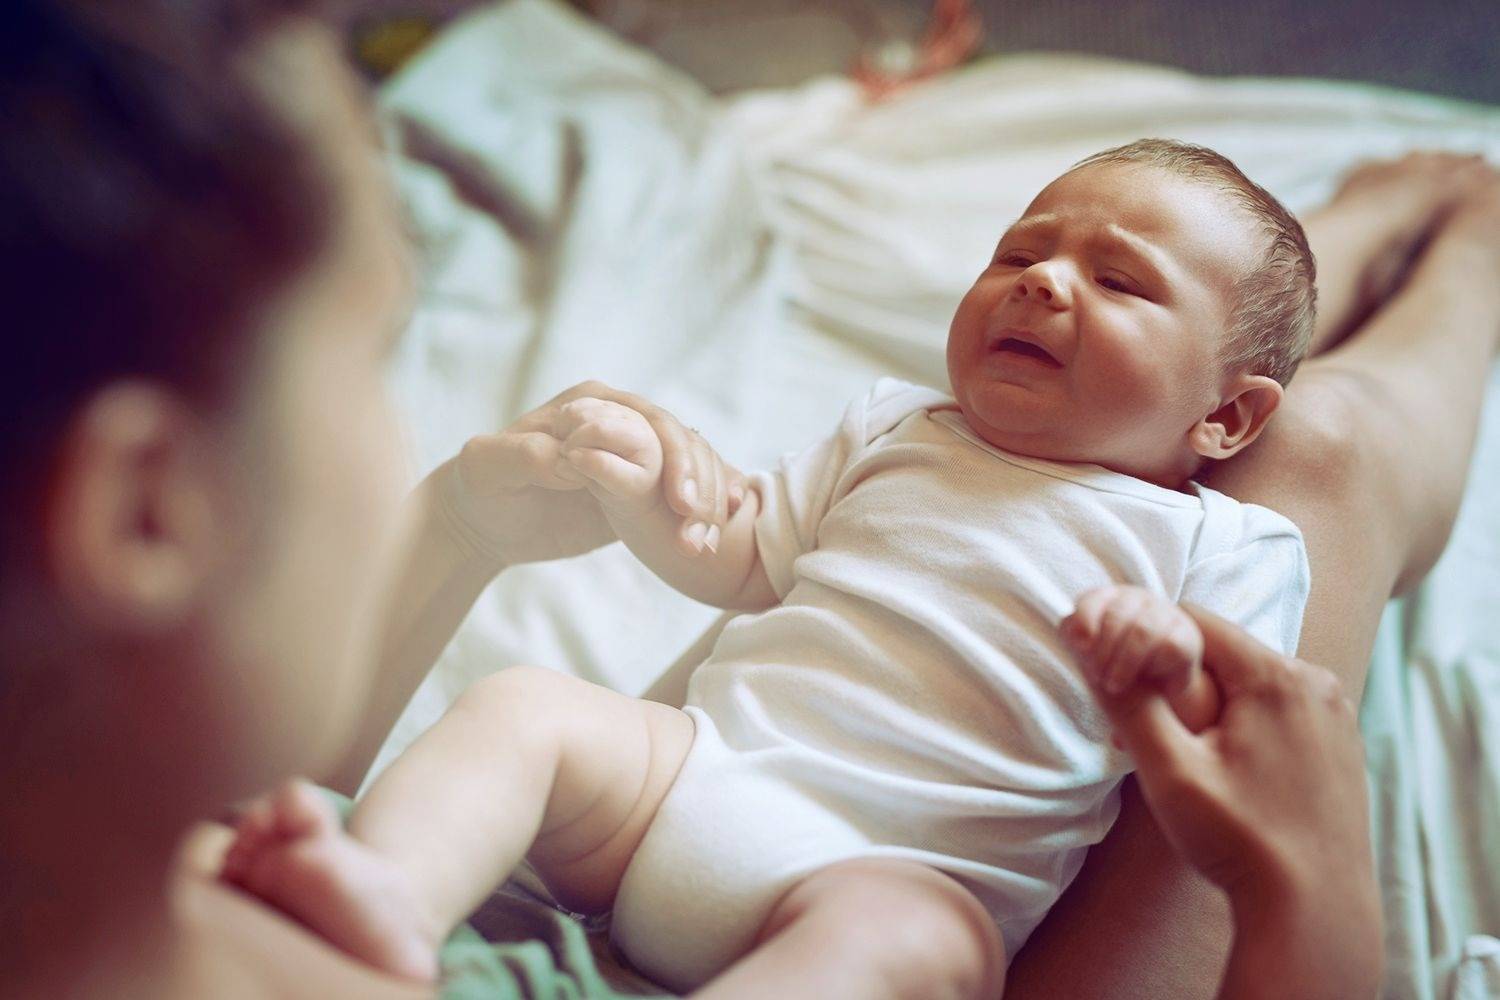 Новорожденный малыш кряхтит во сне, постоянно тужится и стонет: почему это происходит и что делать?